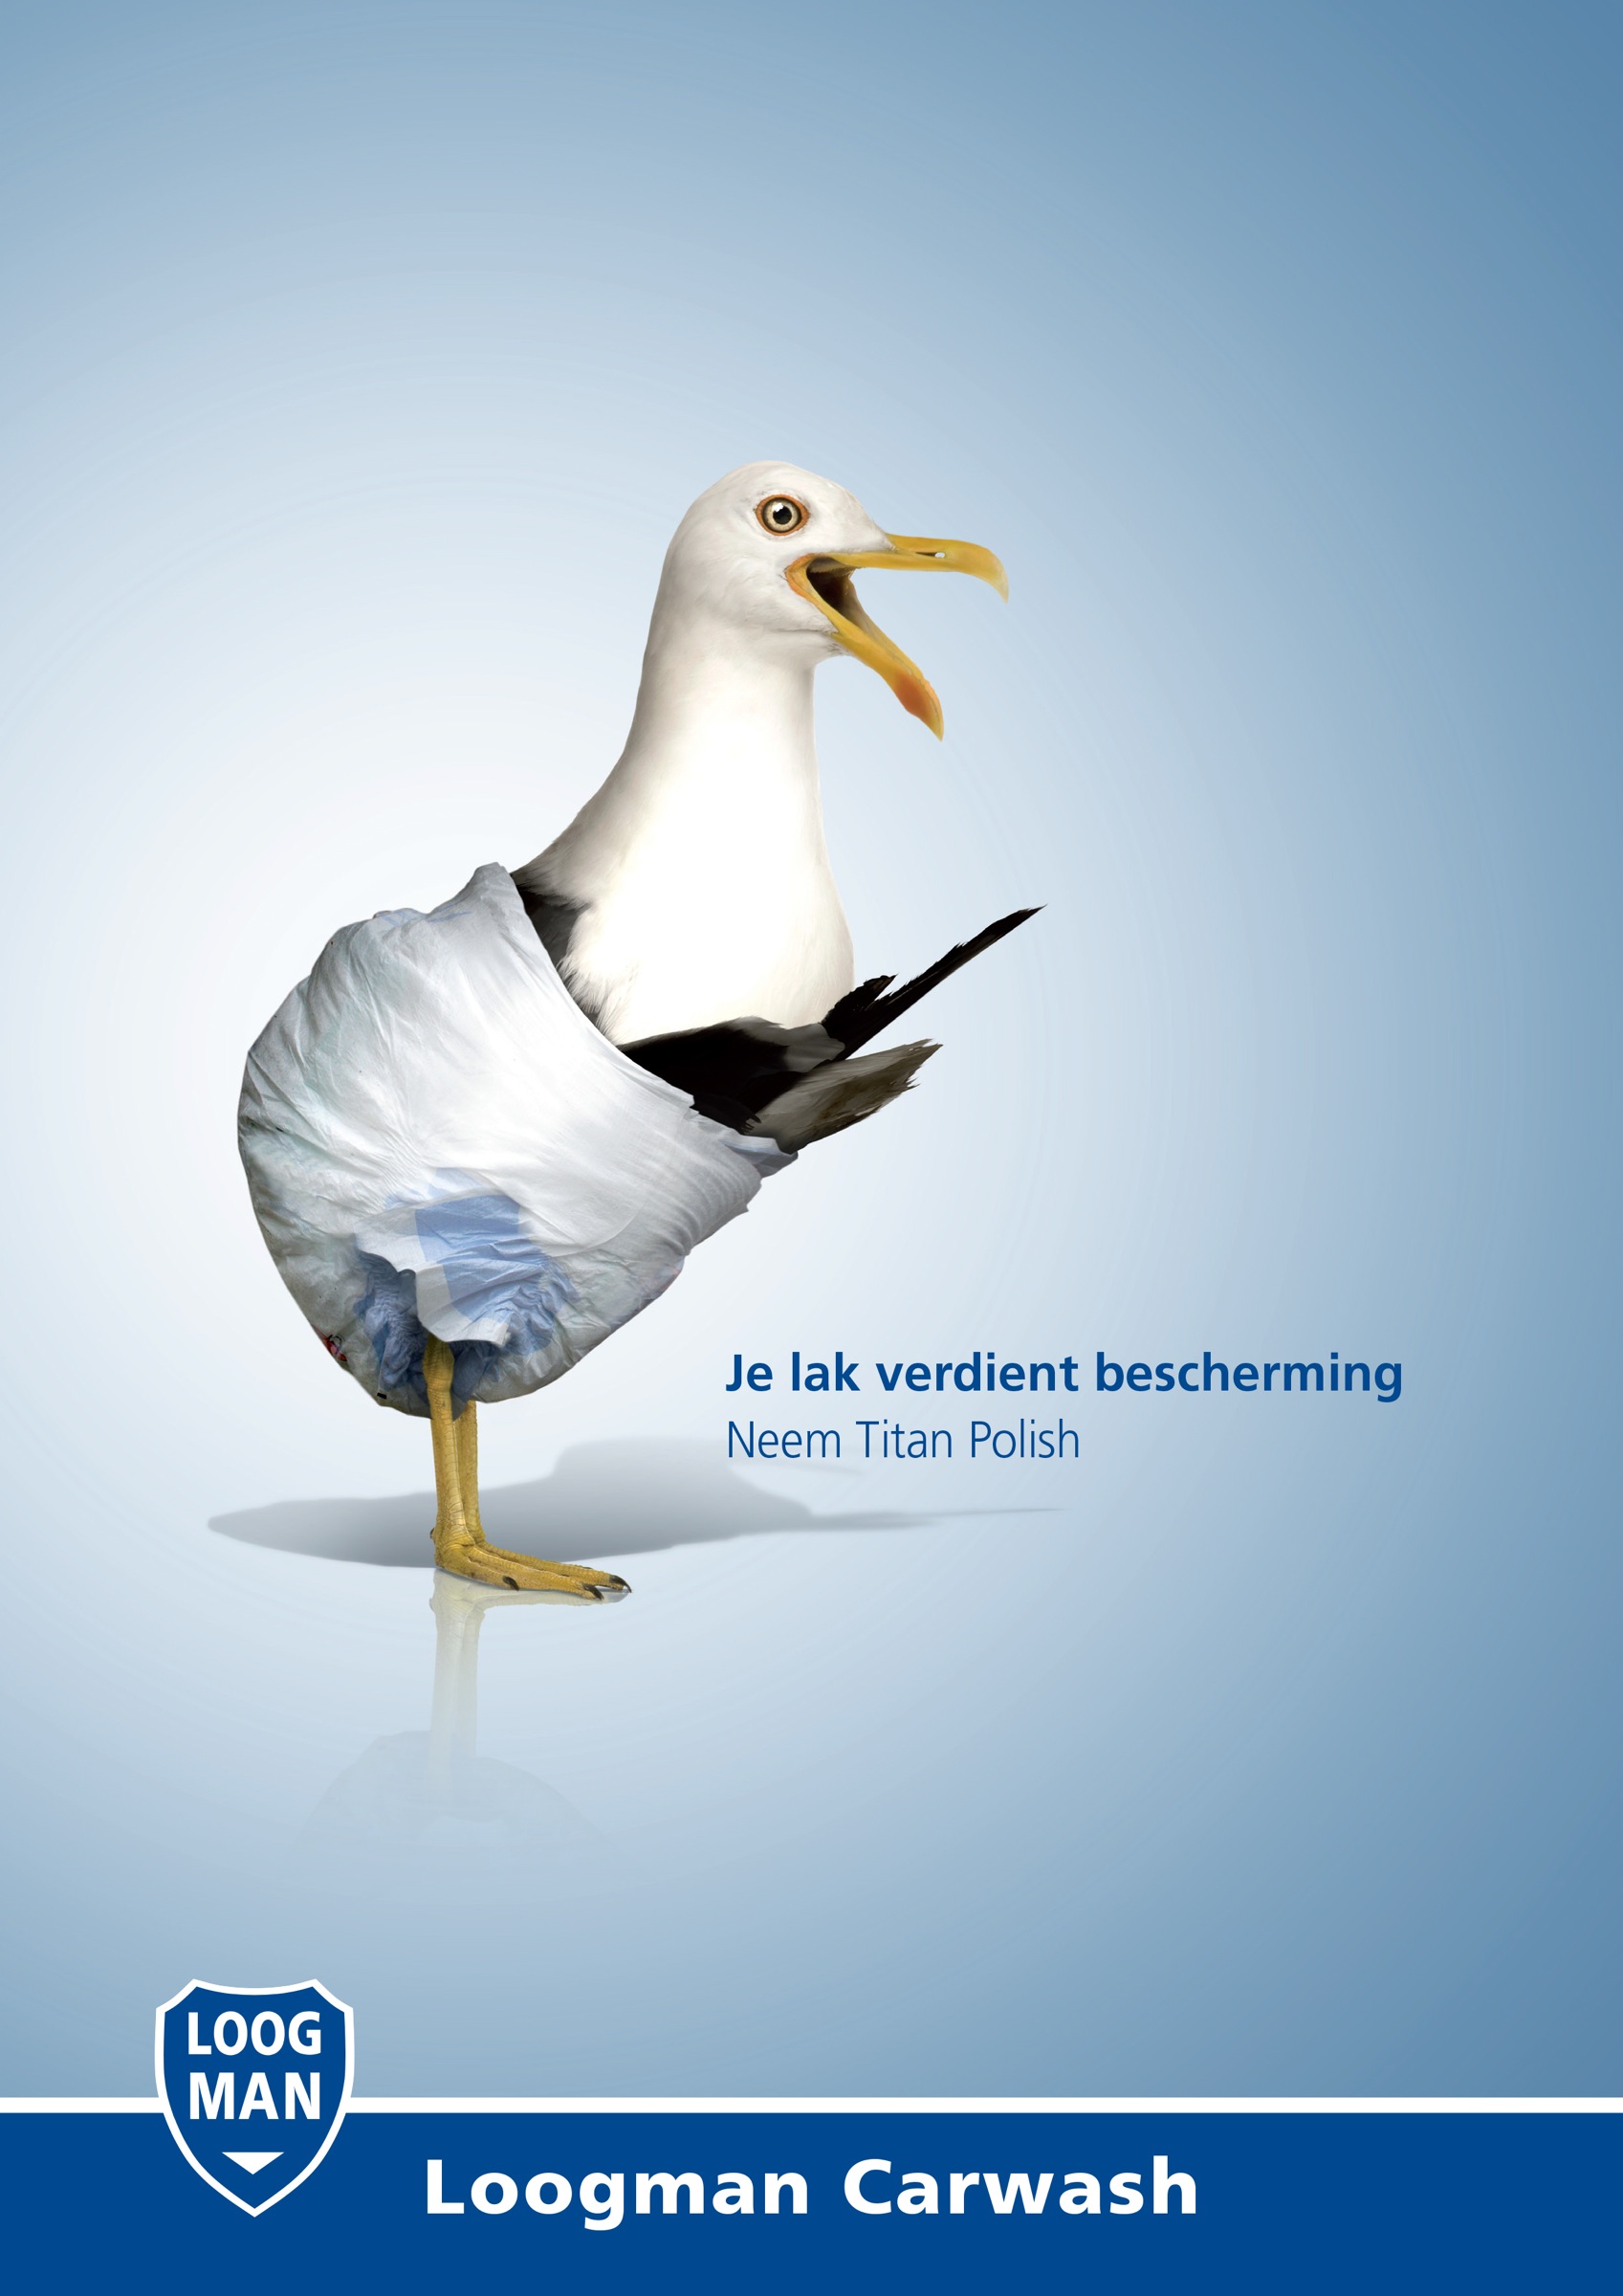 荷兰loogman洗车行平面广告设计